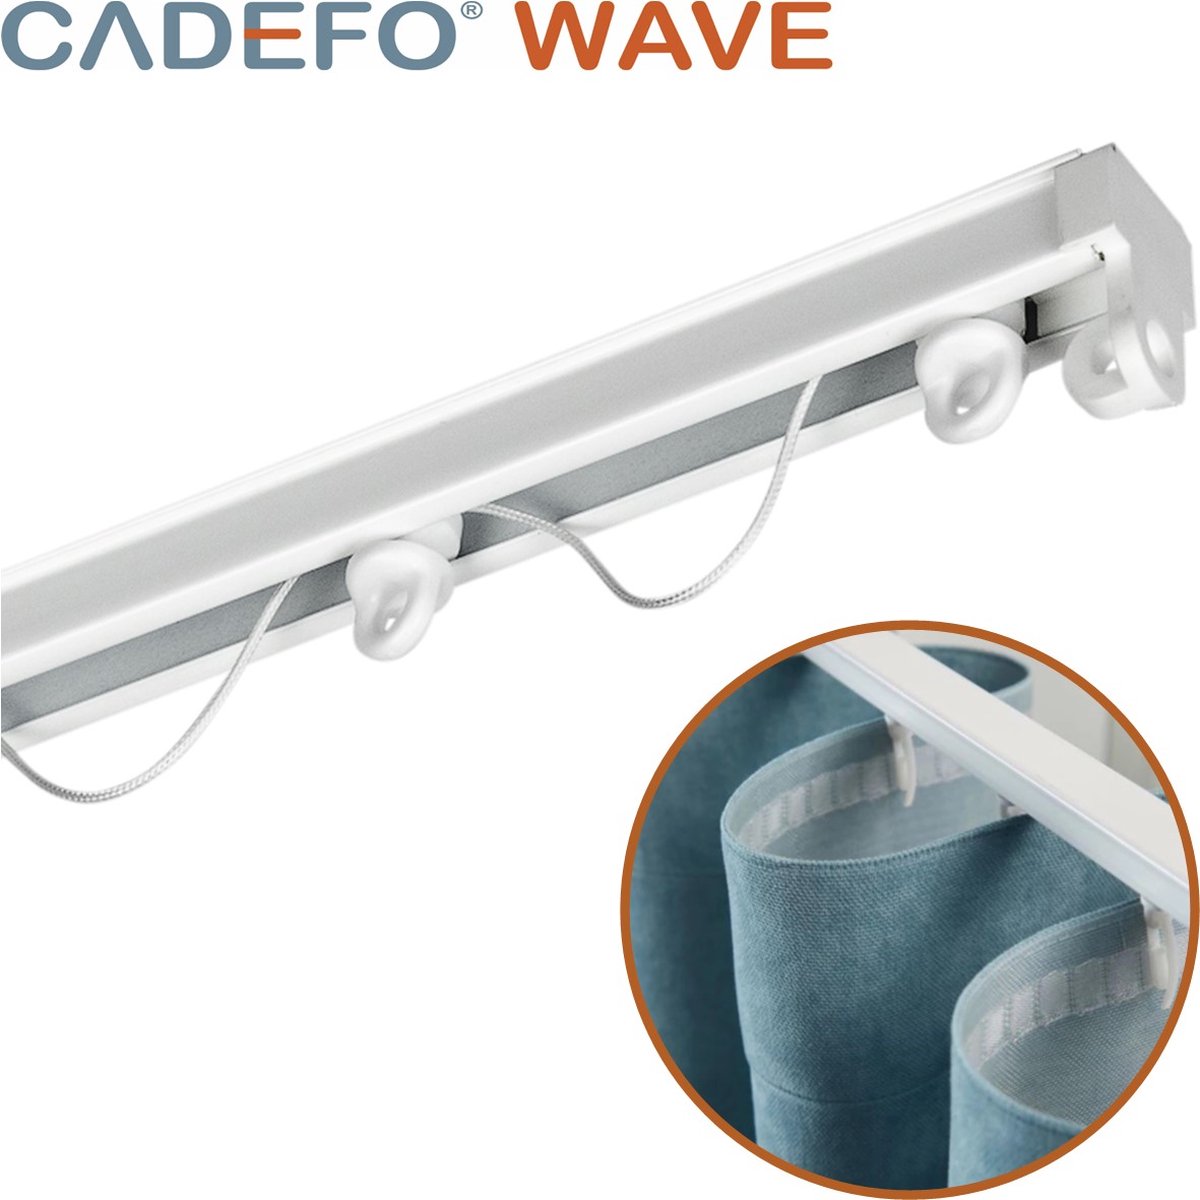 CADEFO WAVE (351 - 400 cm) Gordijnrails - Compleet op maat! - UIT 1 STUK - Leverbaar tot 6 meter - Plafondbevestiging - Lengte 378 cm